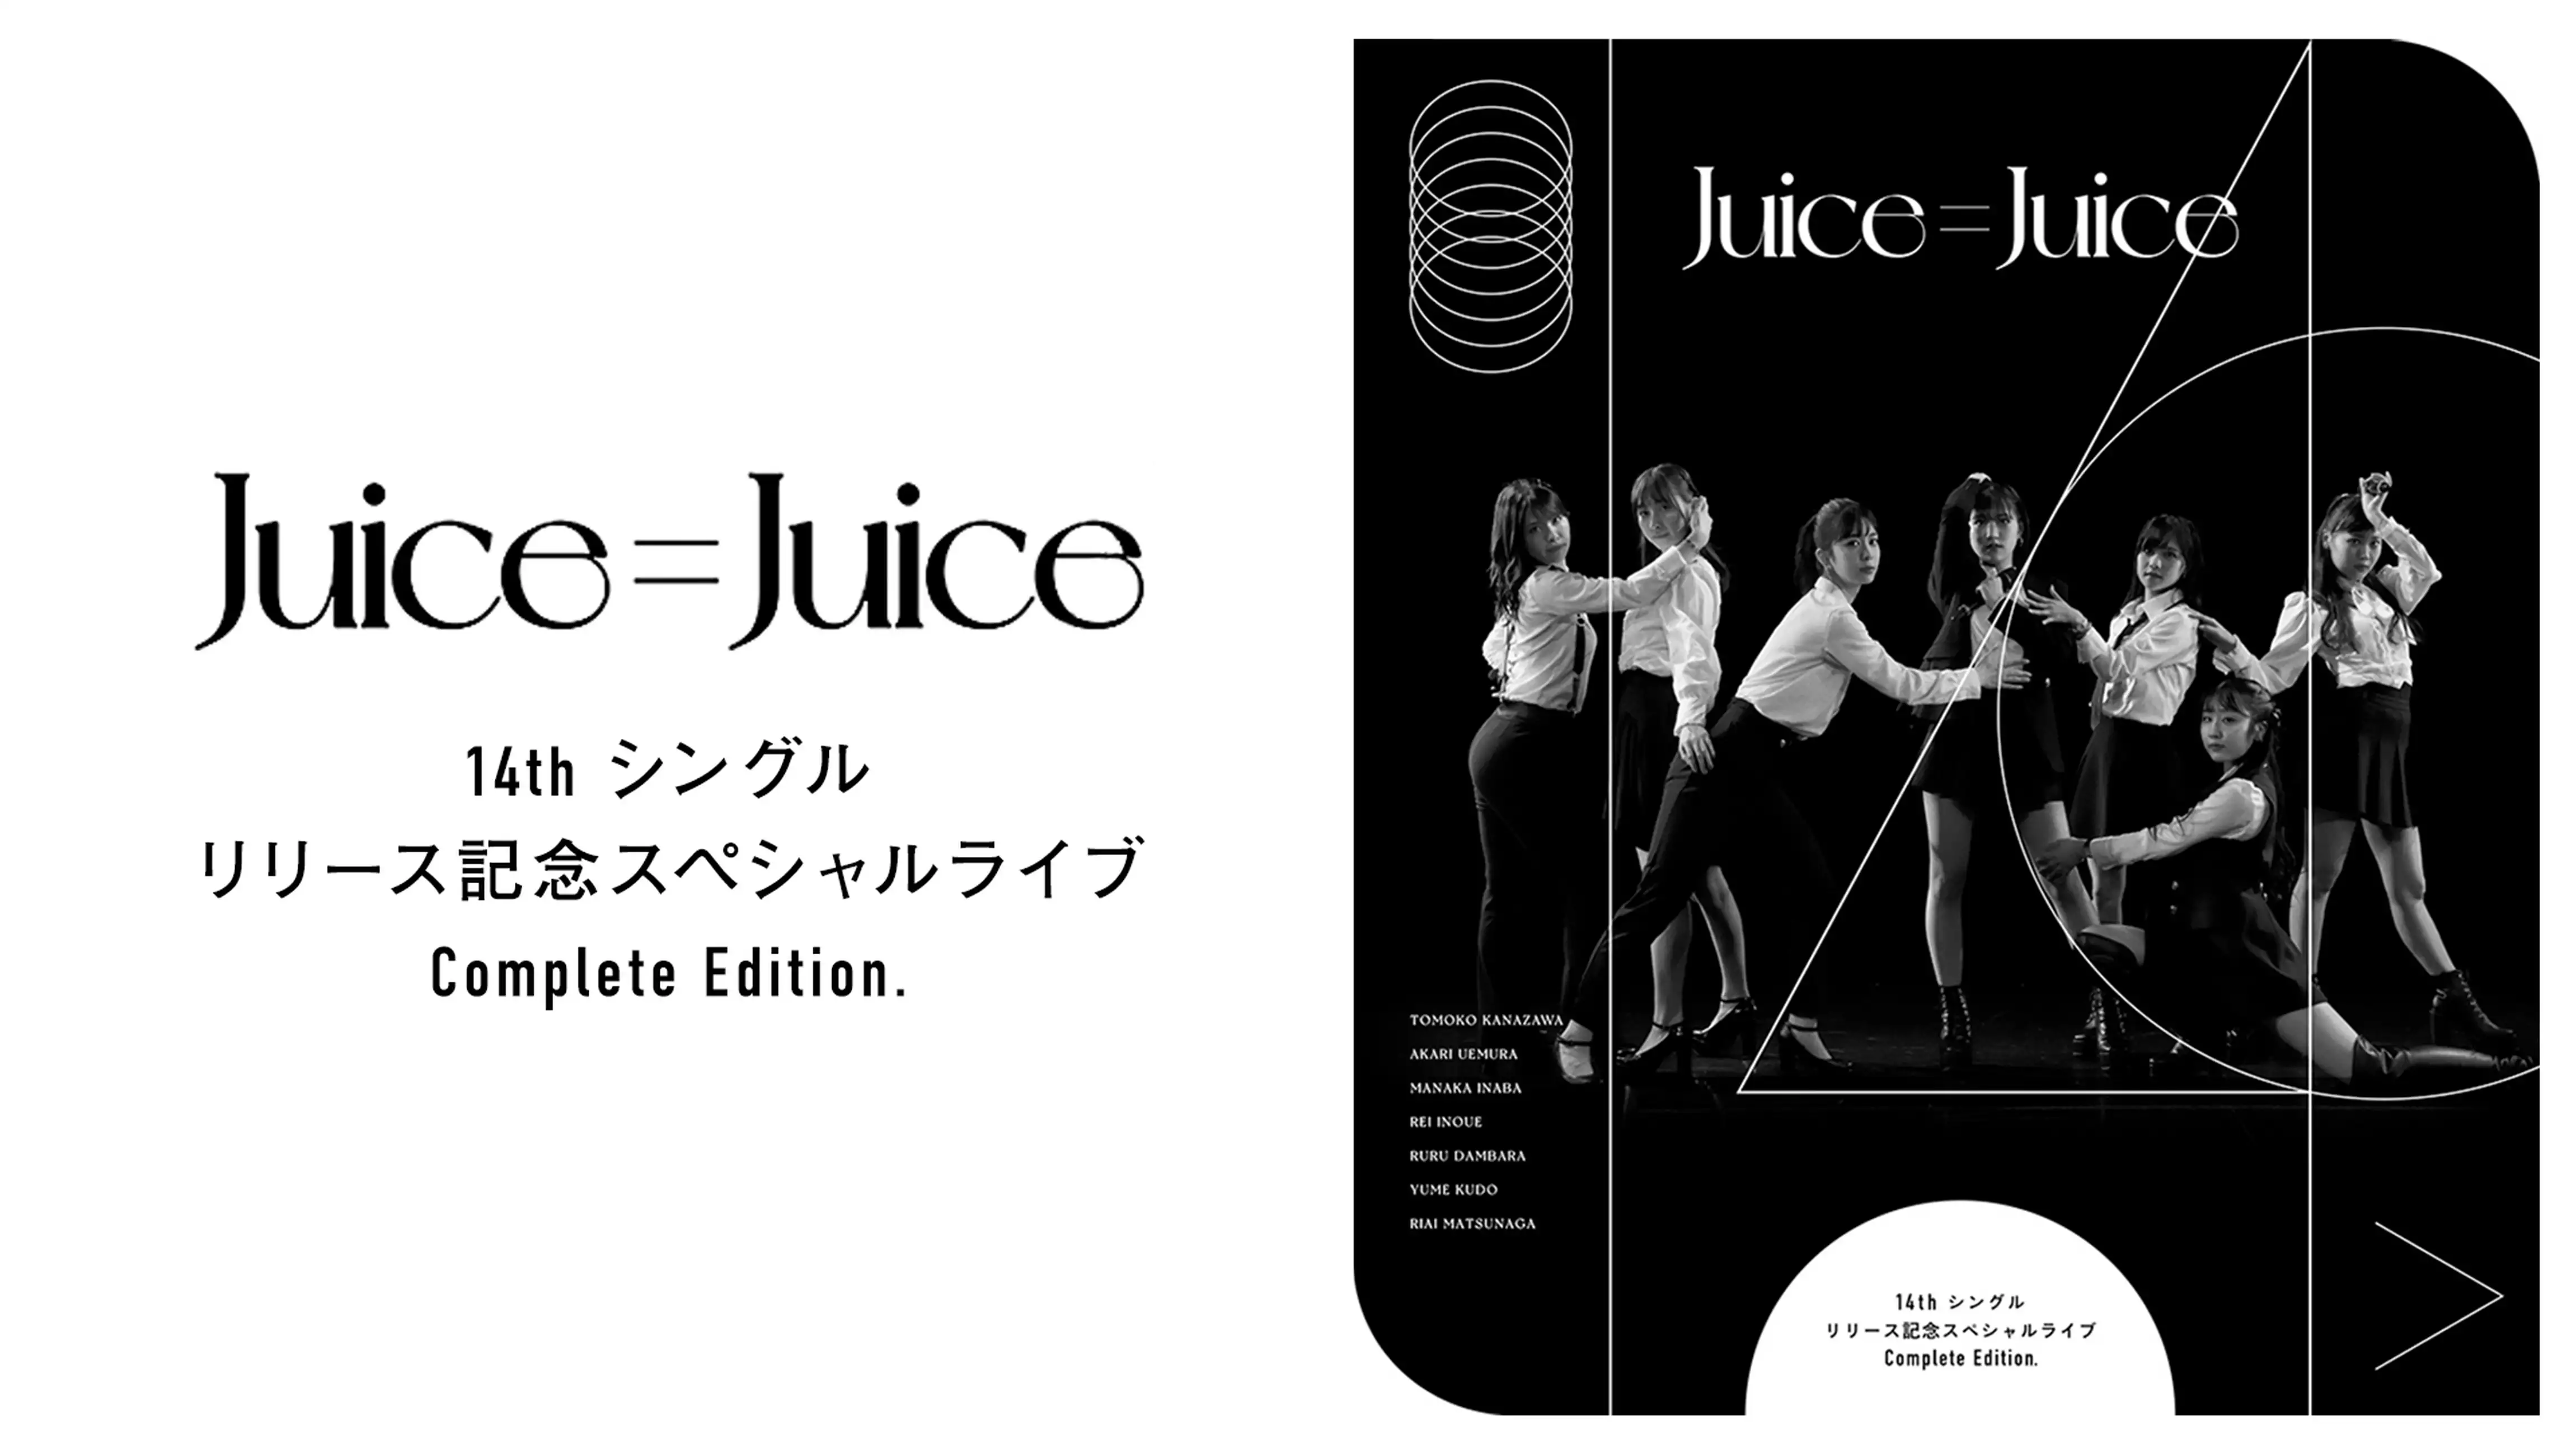 Juice=Juice 14th シングルリリース記念スペシャルライブ Complete Edition.